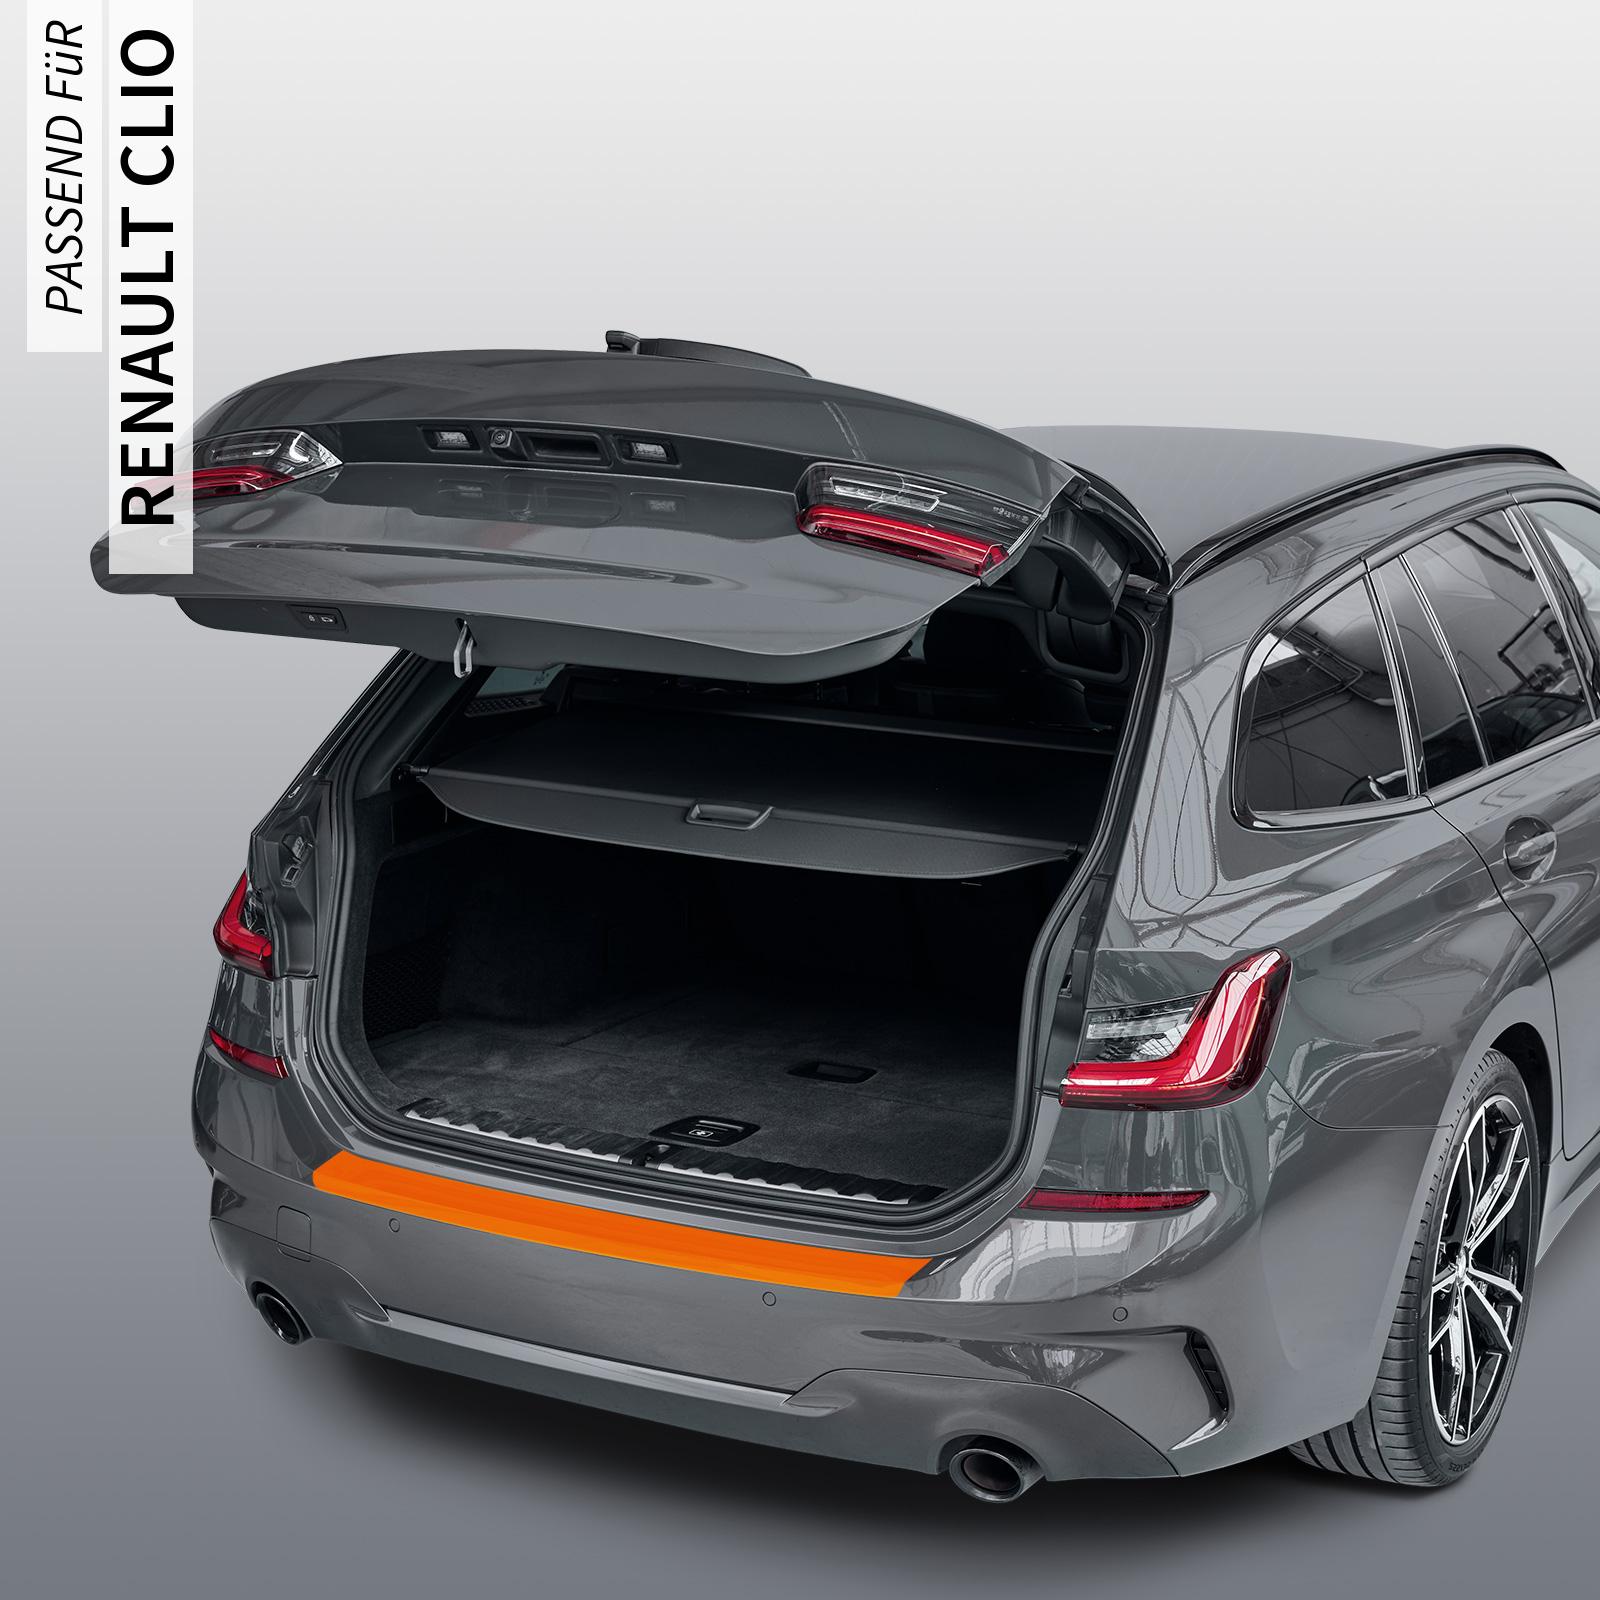 Ladekantenschutzfolie - Transparent Glatt MATT 110 µm stark  für Renault Clio (IV) Typ X98, BJ 2012-09/2019